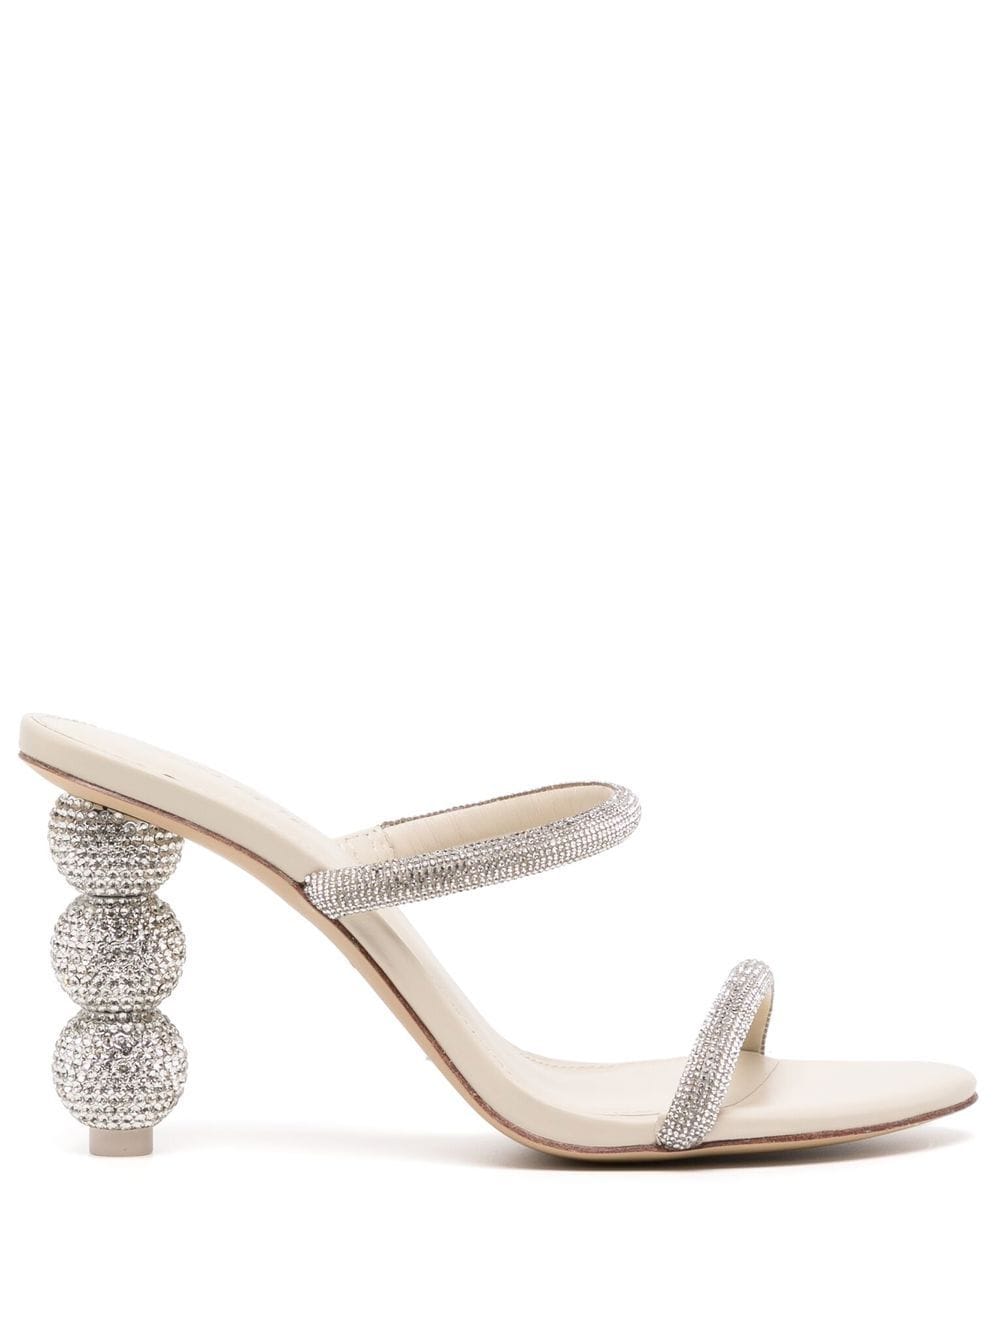 Cult Gaia Envi crystal-embellished Sandals - Farfetch